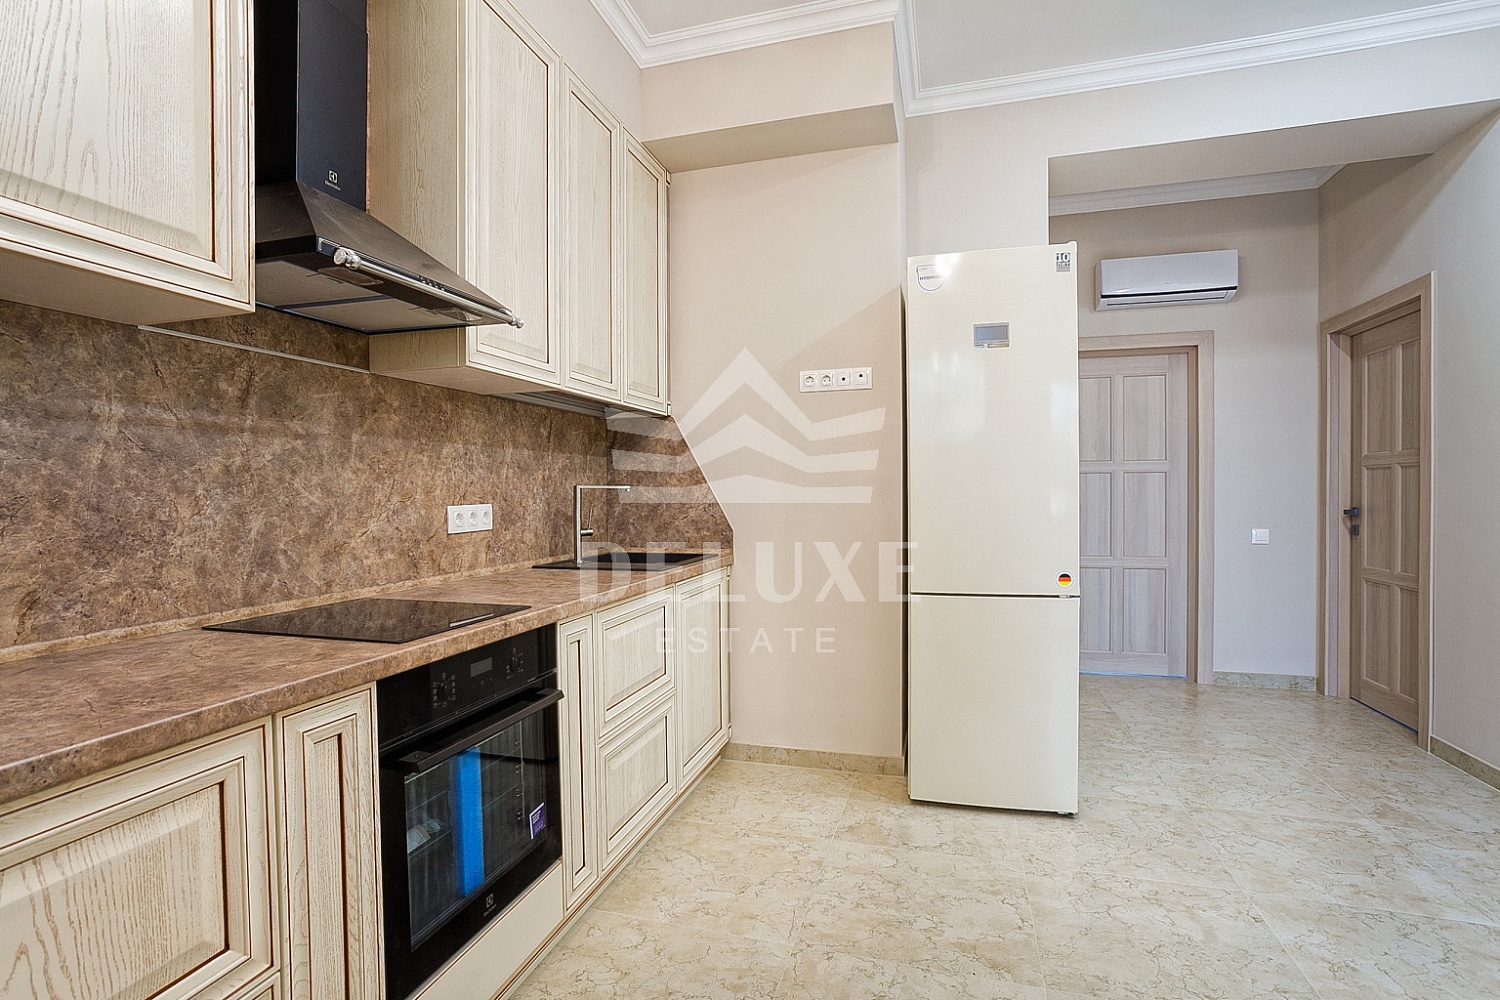 ID 1710 Продажа 2-комнатной квартиры с новым ремонтом в Гурзуфе в ЖК «Шато Лувр»